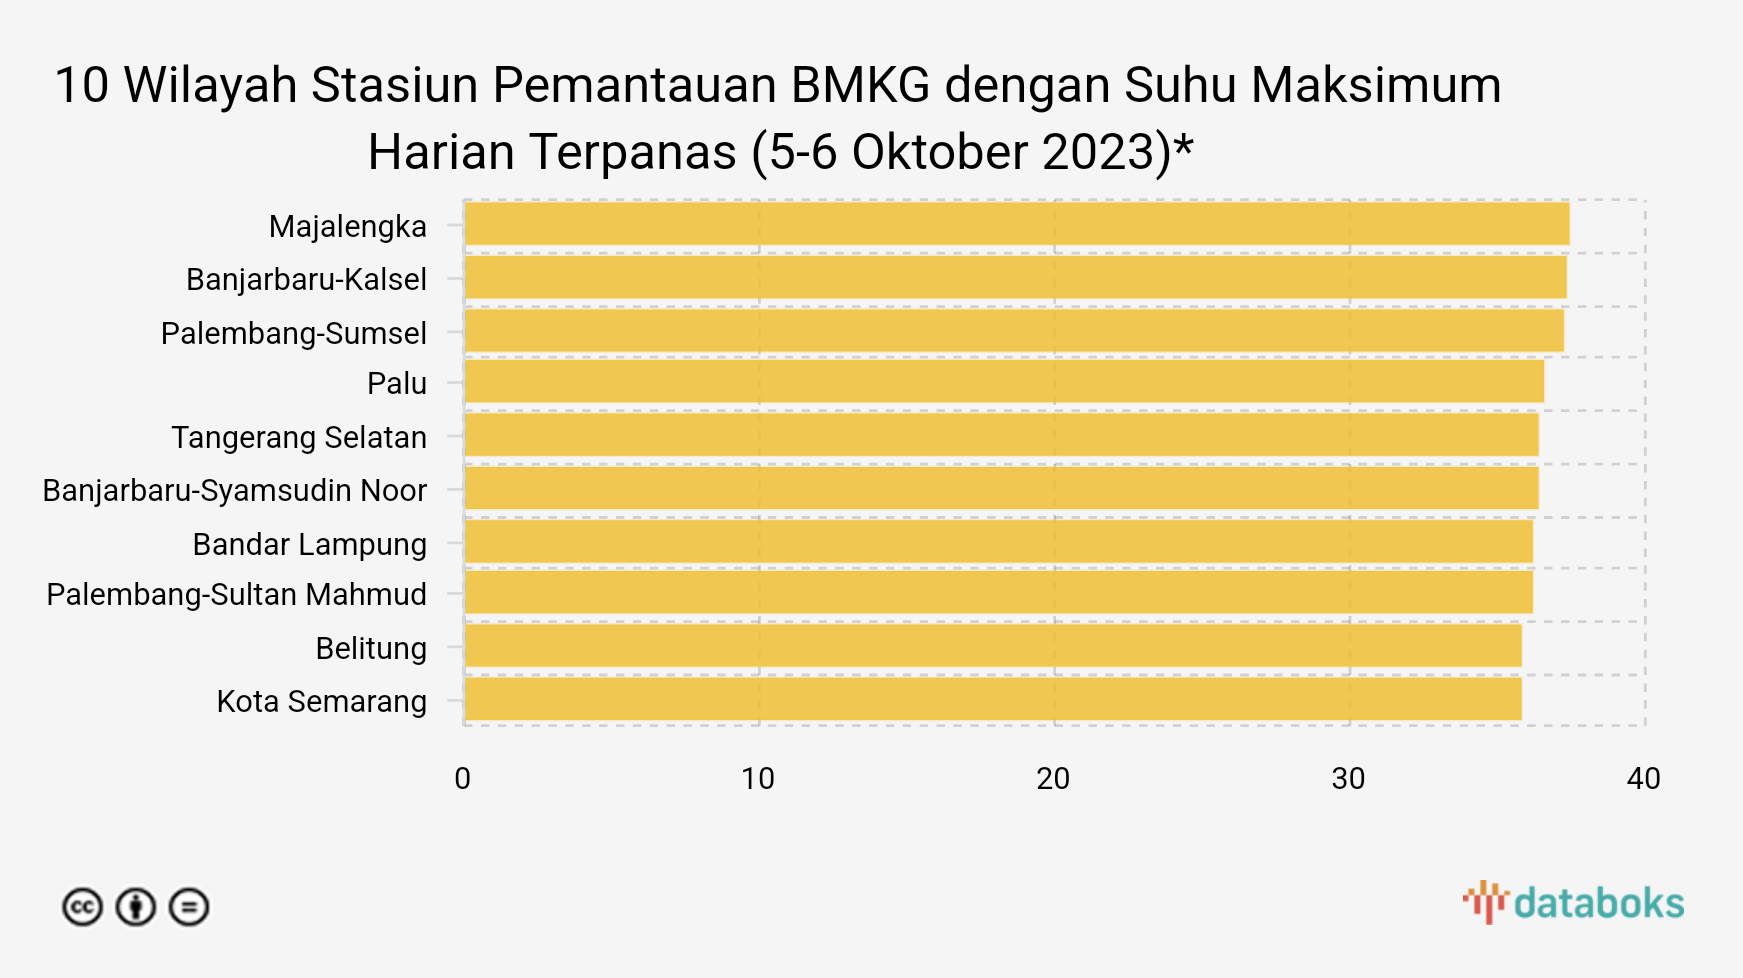 10 Wilayah Stasiun Pemantauan BMKG dengan Suhu Terpanas di Indonesia (5-6 Oktober 2023)*